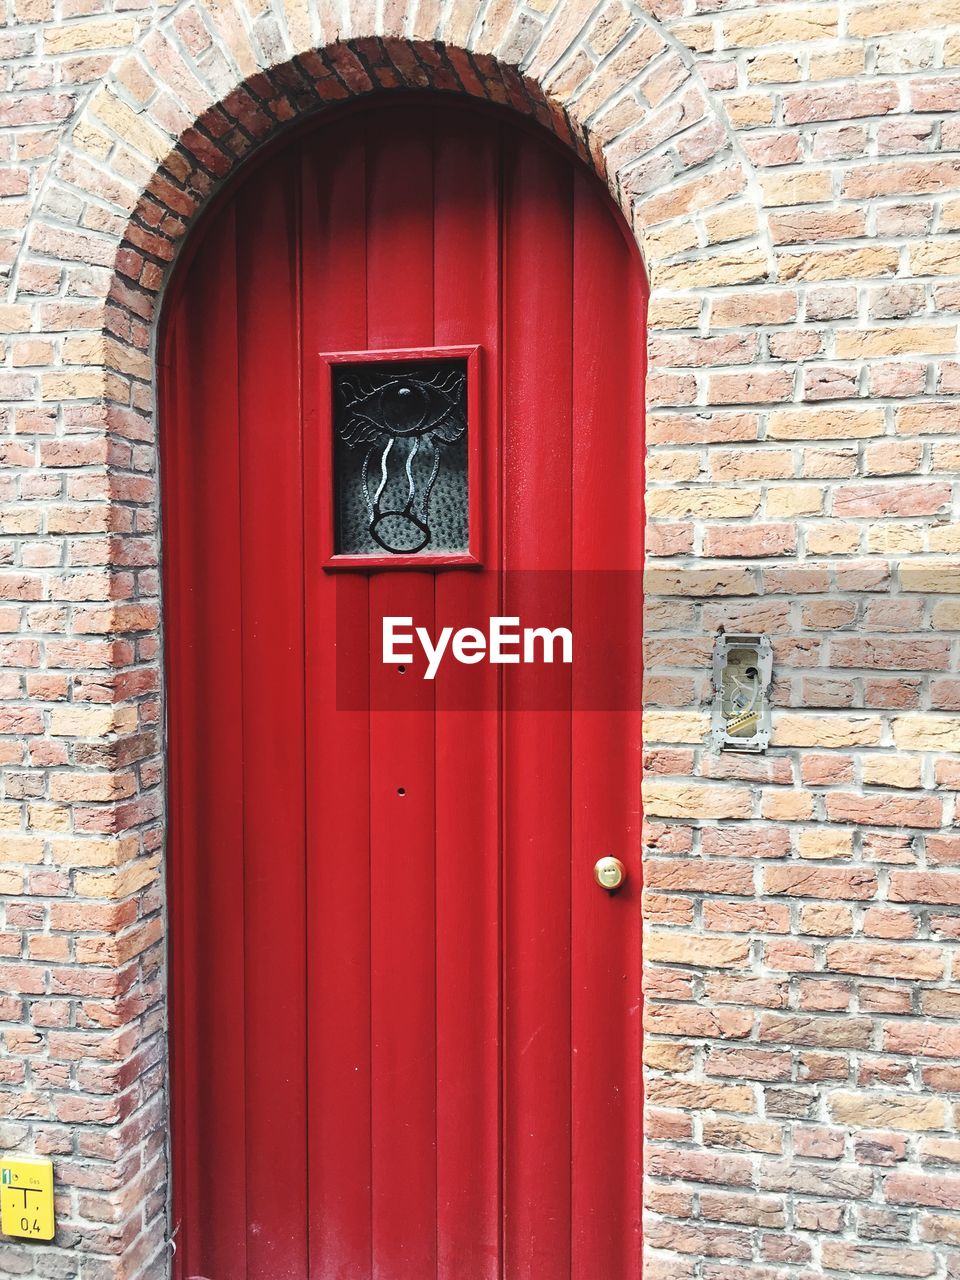 RED CLOSED DOOR OF BUILDING